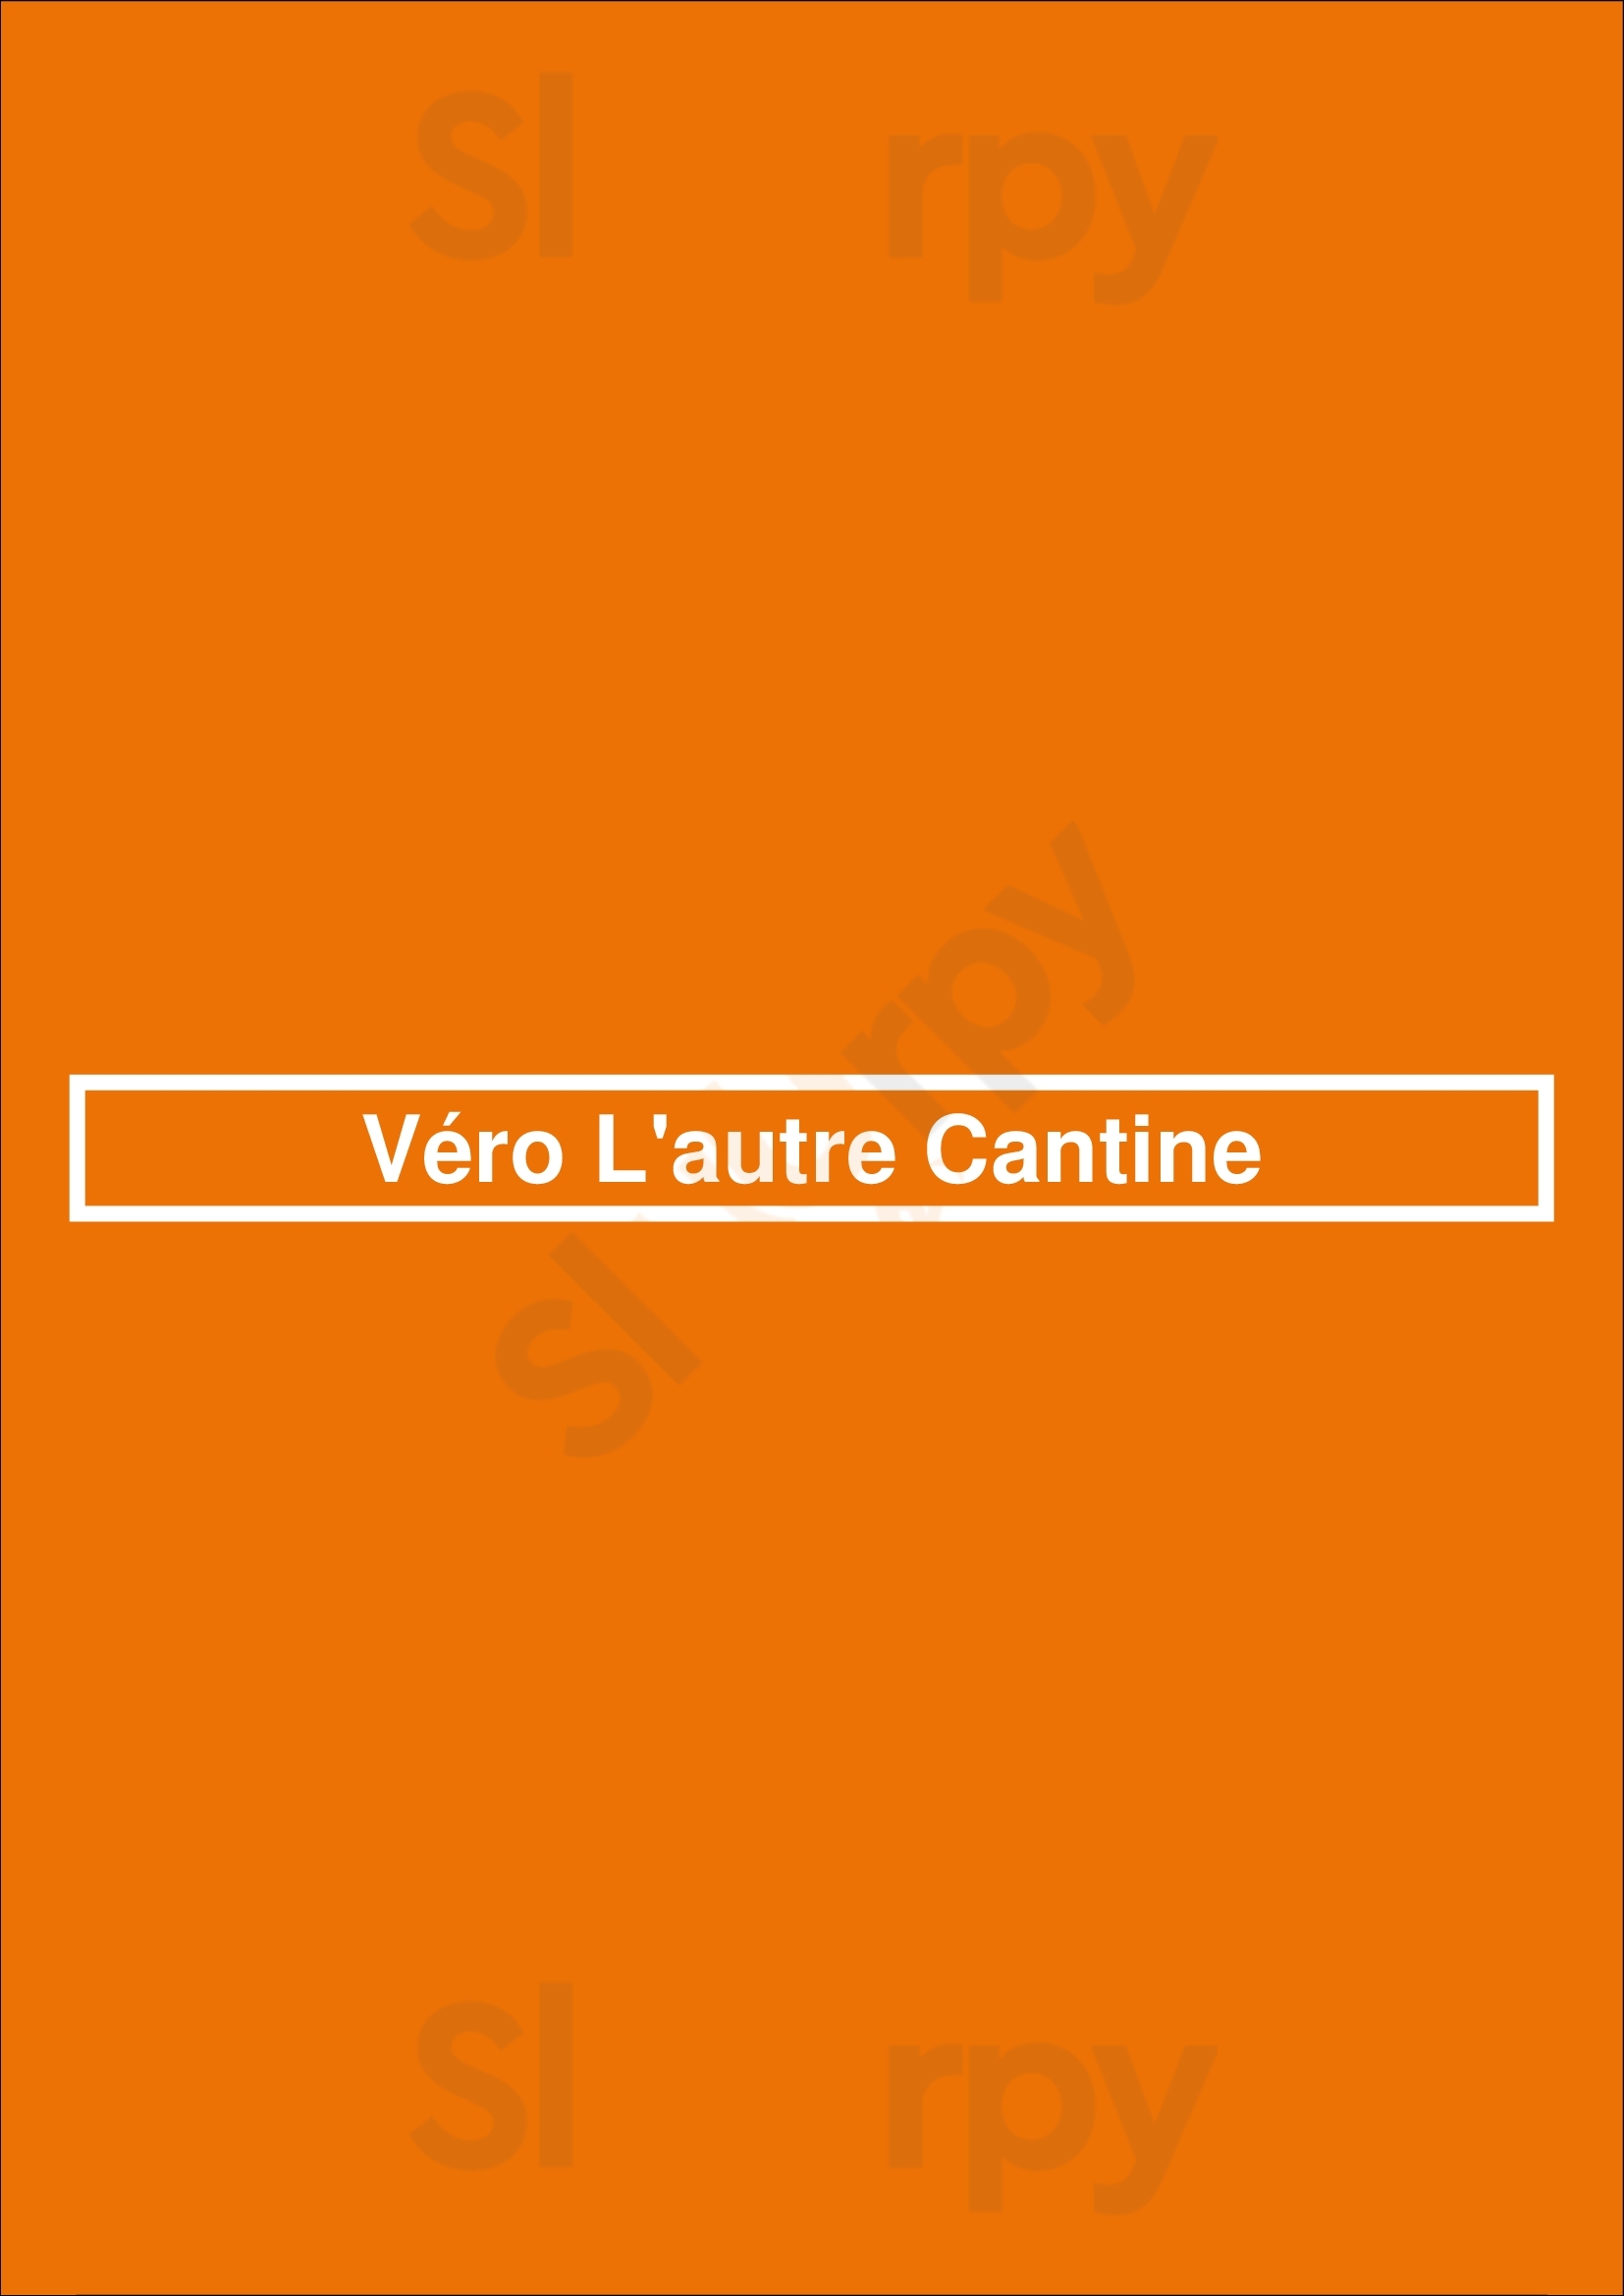 Véro L'autre Cantine Paris Menu - 1